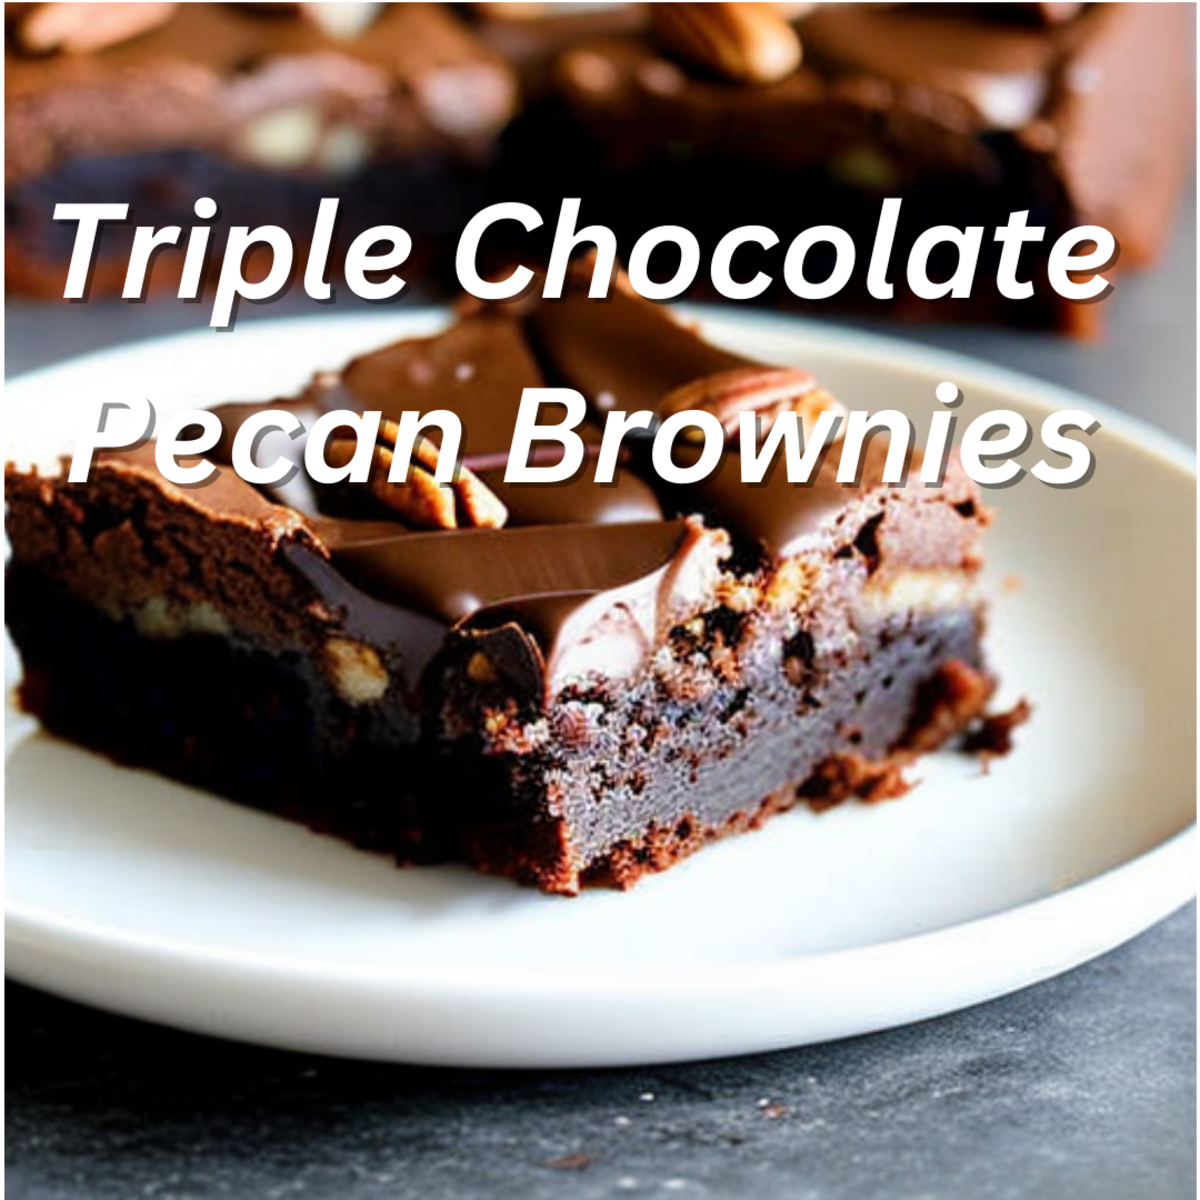 Triple Chocolate Pecan Brownies